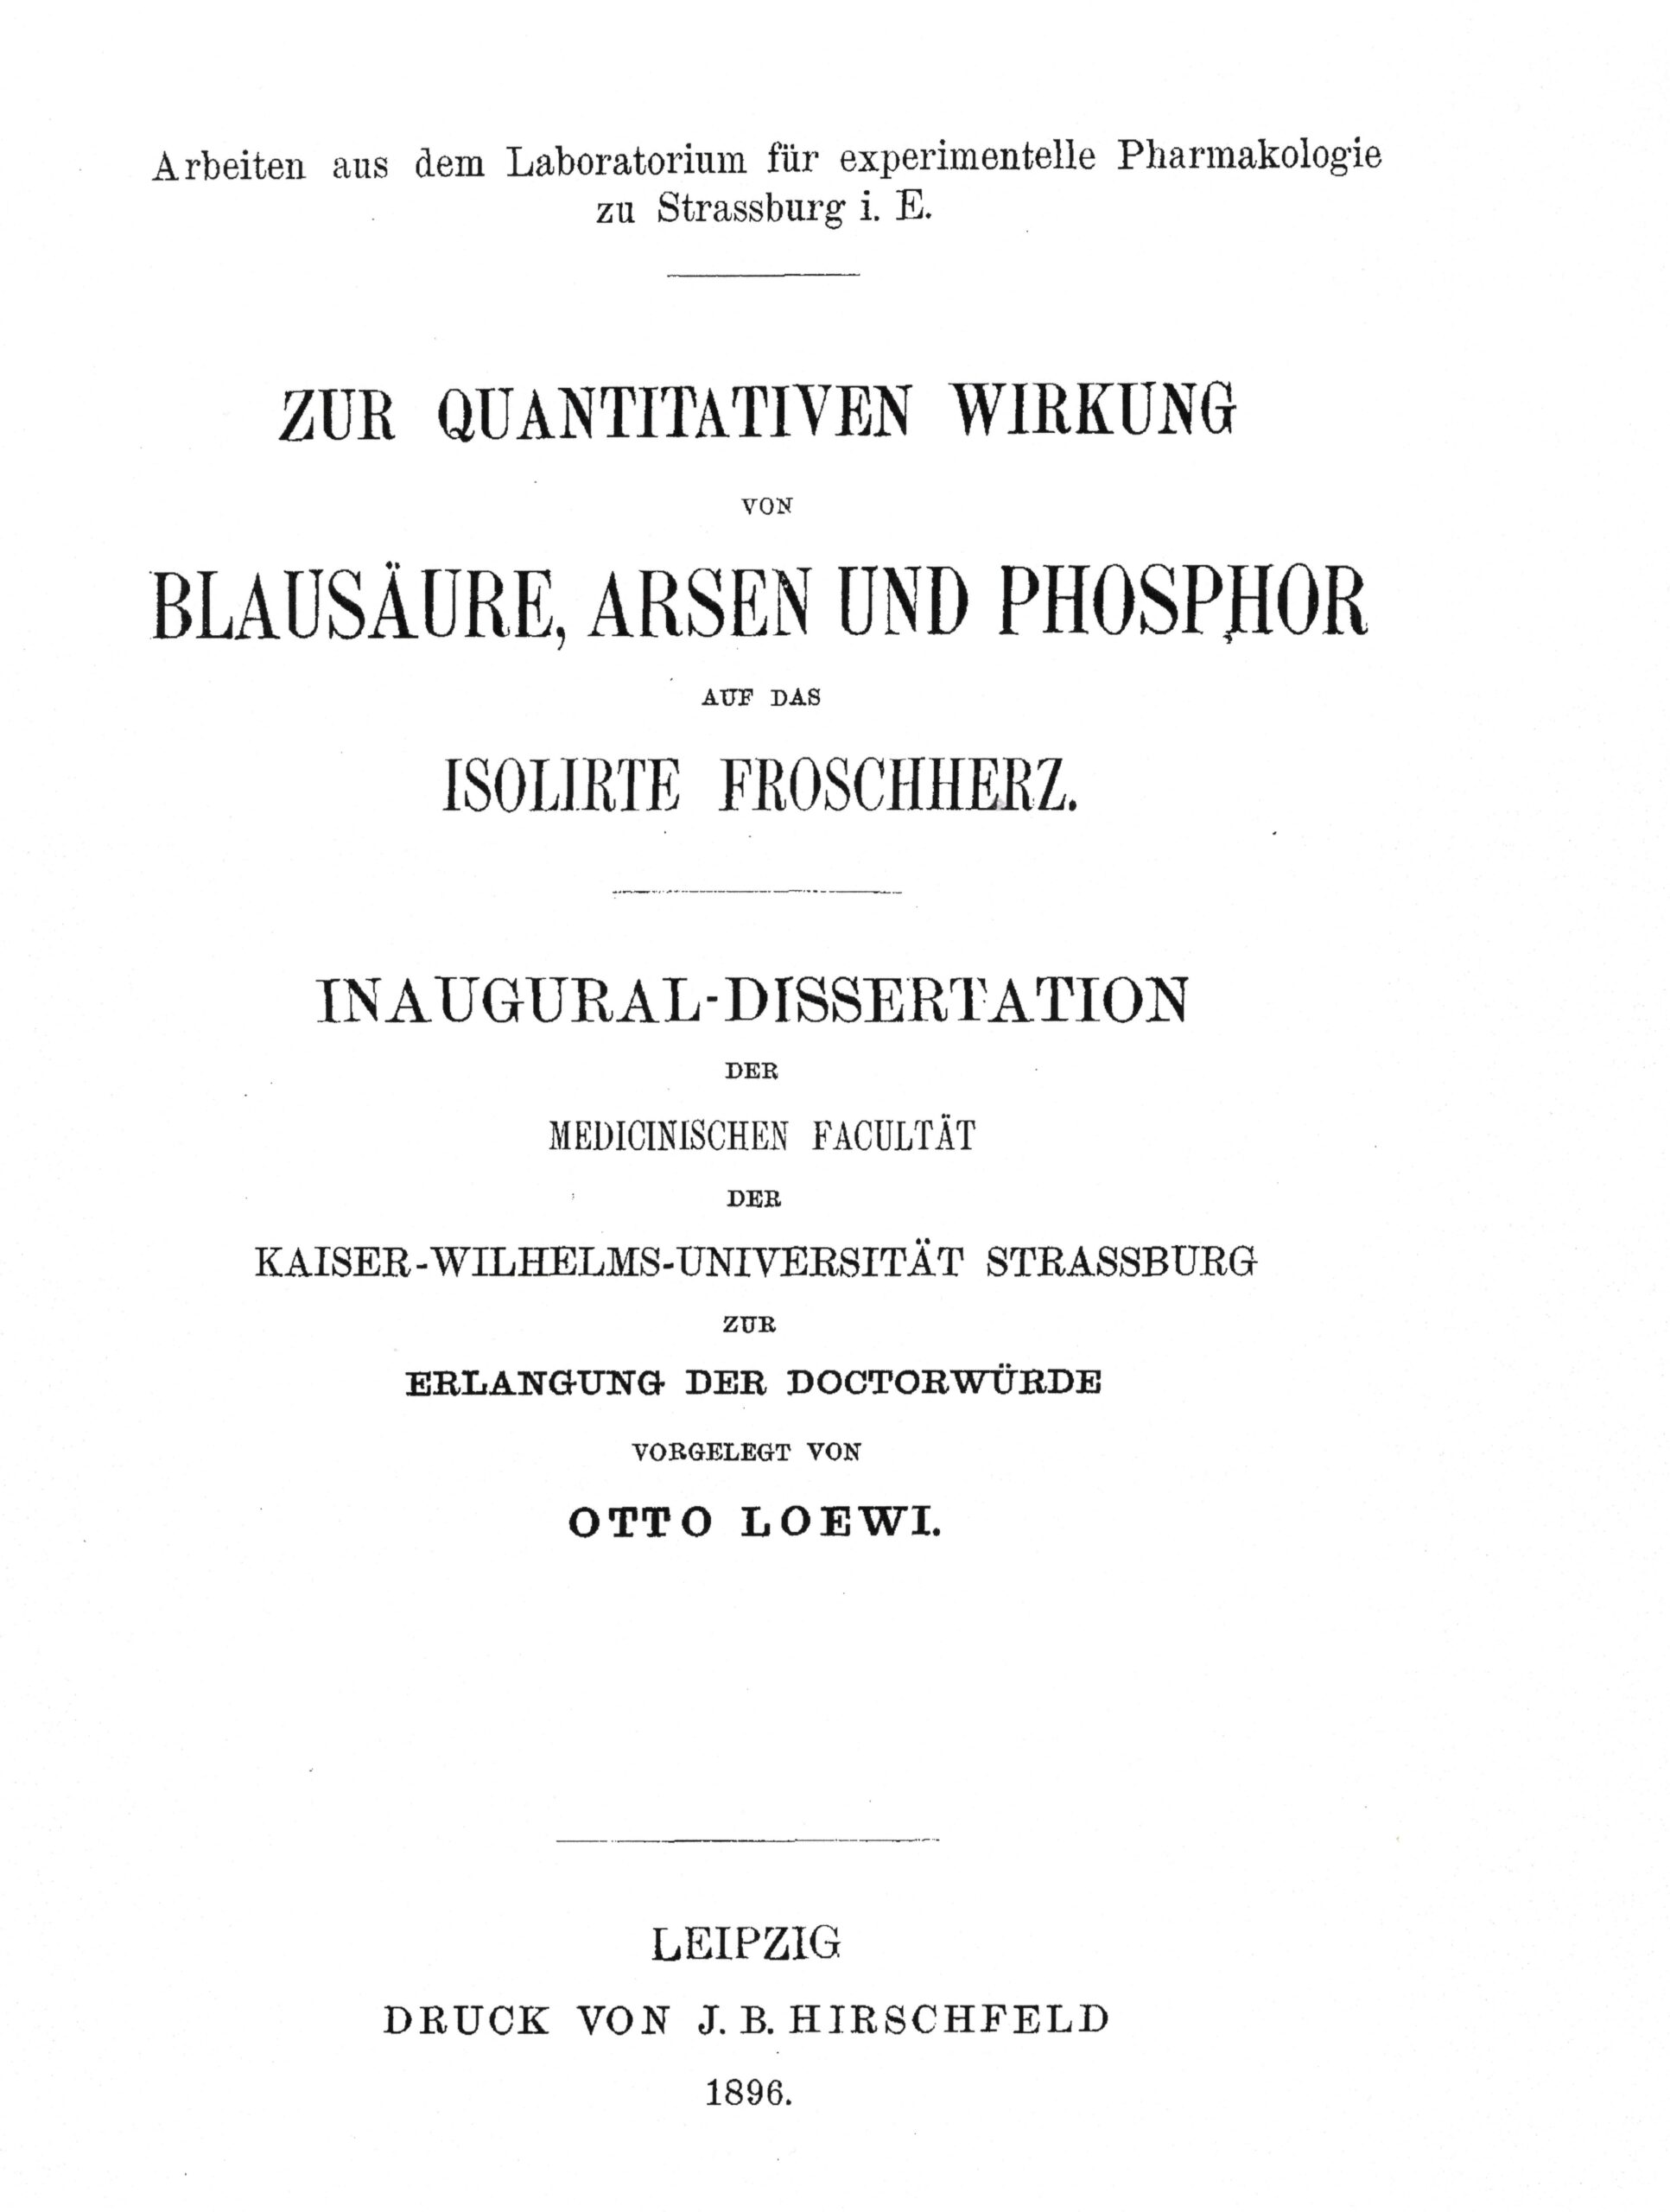 Dissertation, Straßburg 1896